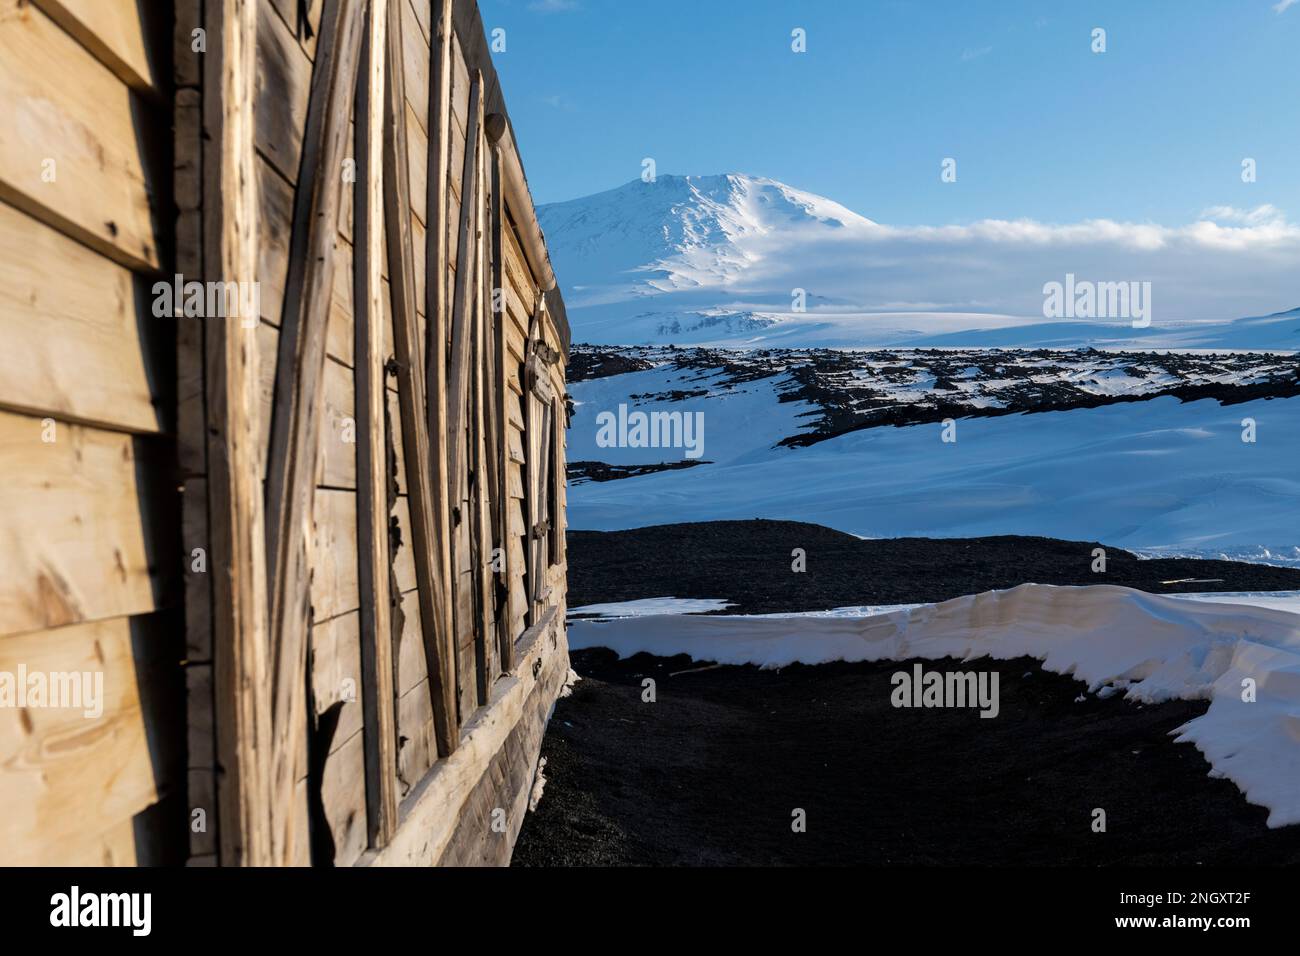 Antarctique, mer de Ross, île de Ross, Cap Evans. Vue extérieure de la cabane historique de Scott avec le mont Erebus au loin. Banque D'Images